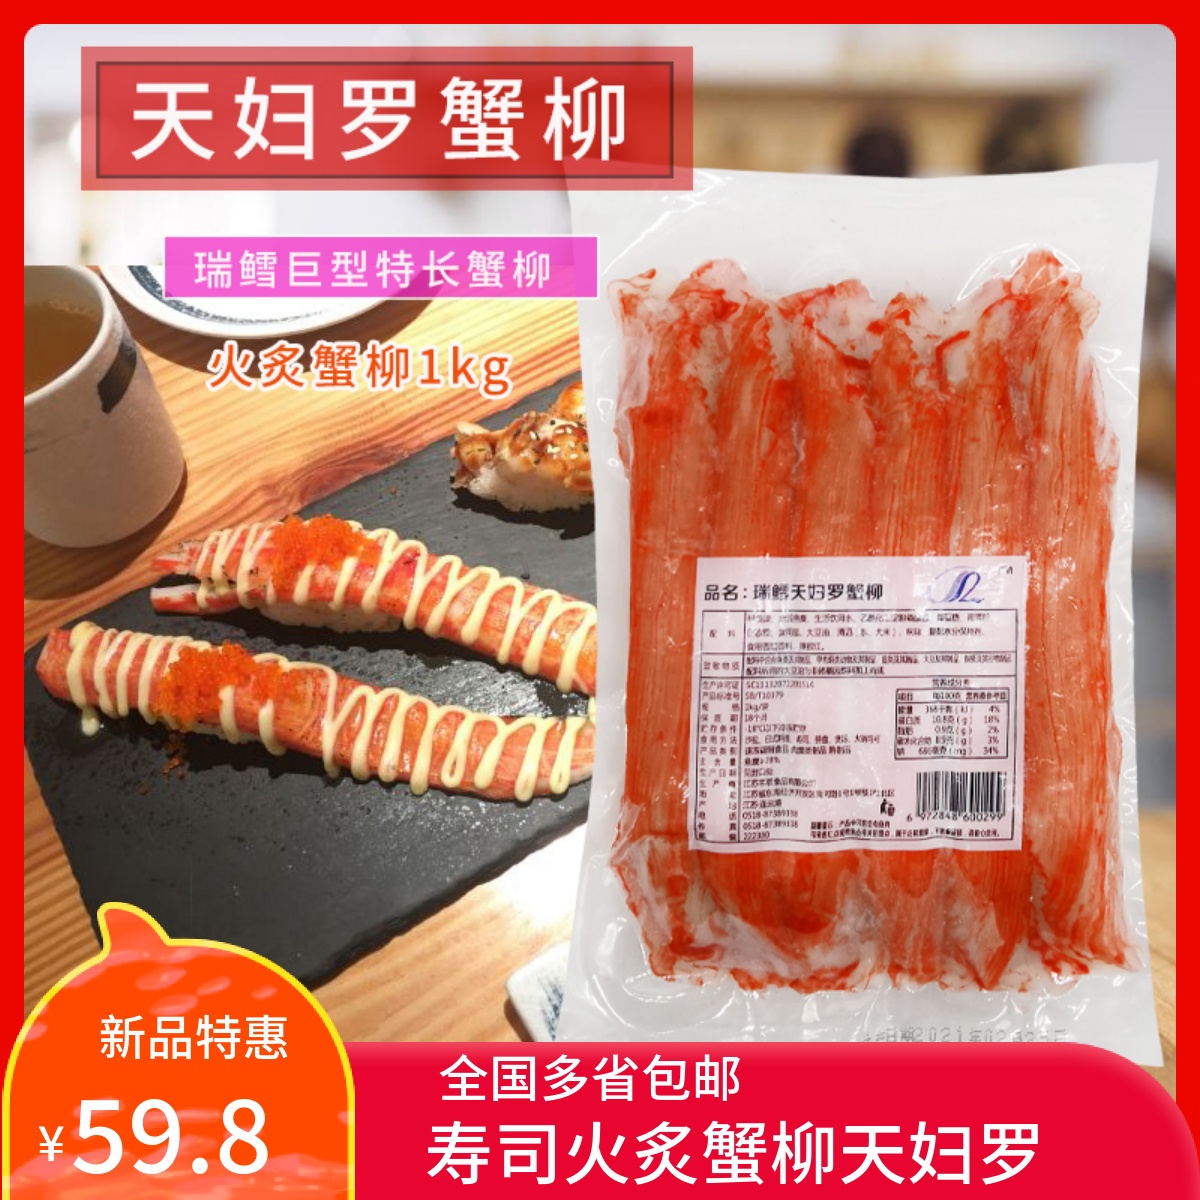 天妇罗蟹柳 - 日本纳豆 日本年糕 寿司虾 蟹柳 专业日本料理原材料贸易公司